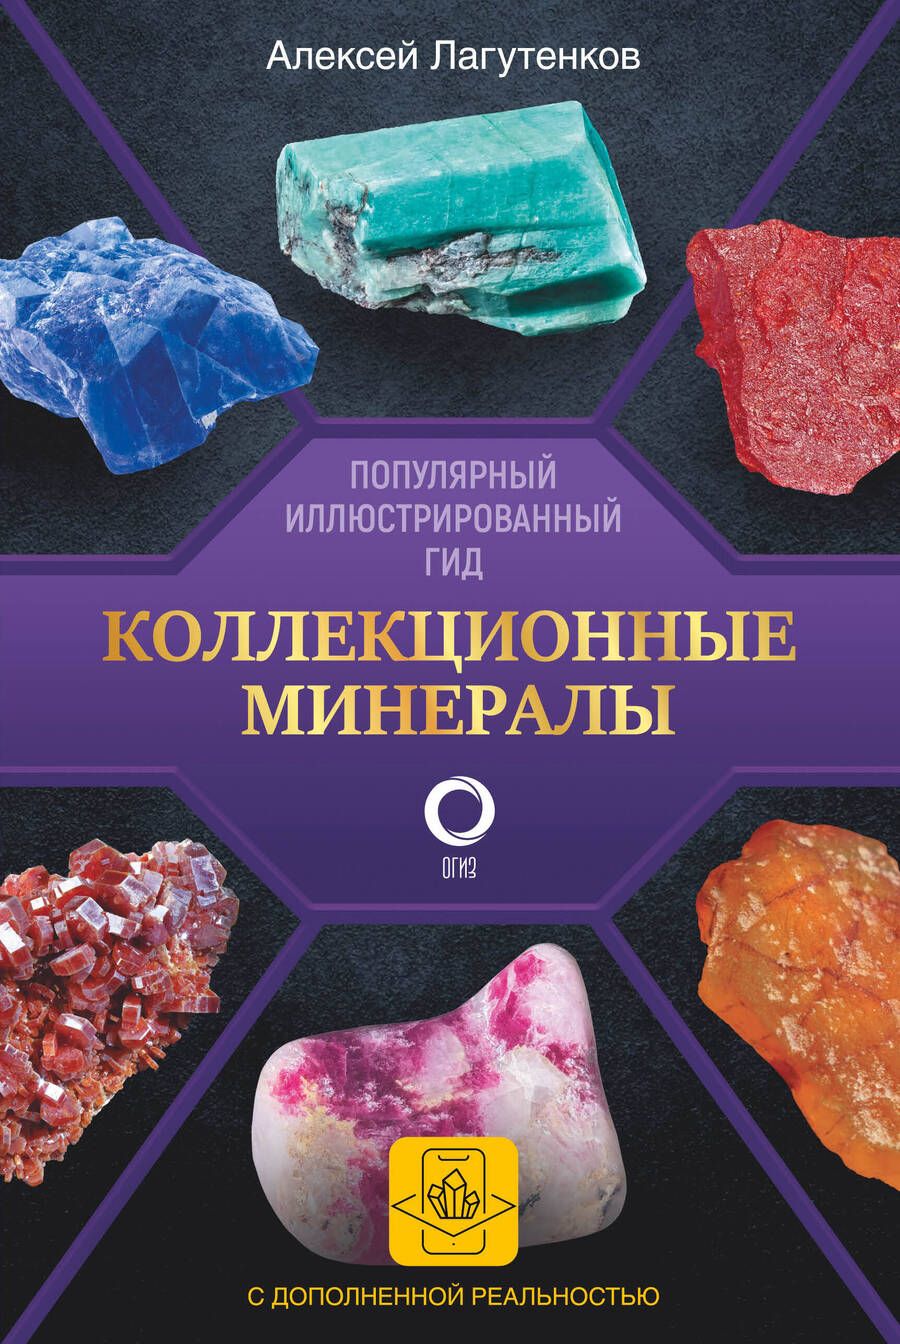 Обложка книги "Лагутенков: Коллекционные минералы. Популярный иллюстрированный гид. С дополненной 3D-реальностью"